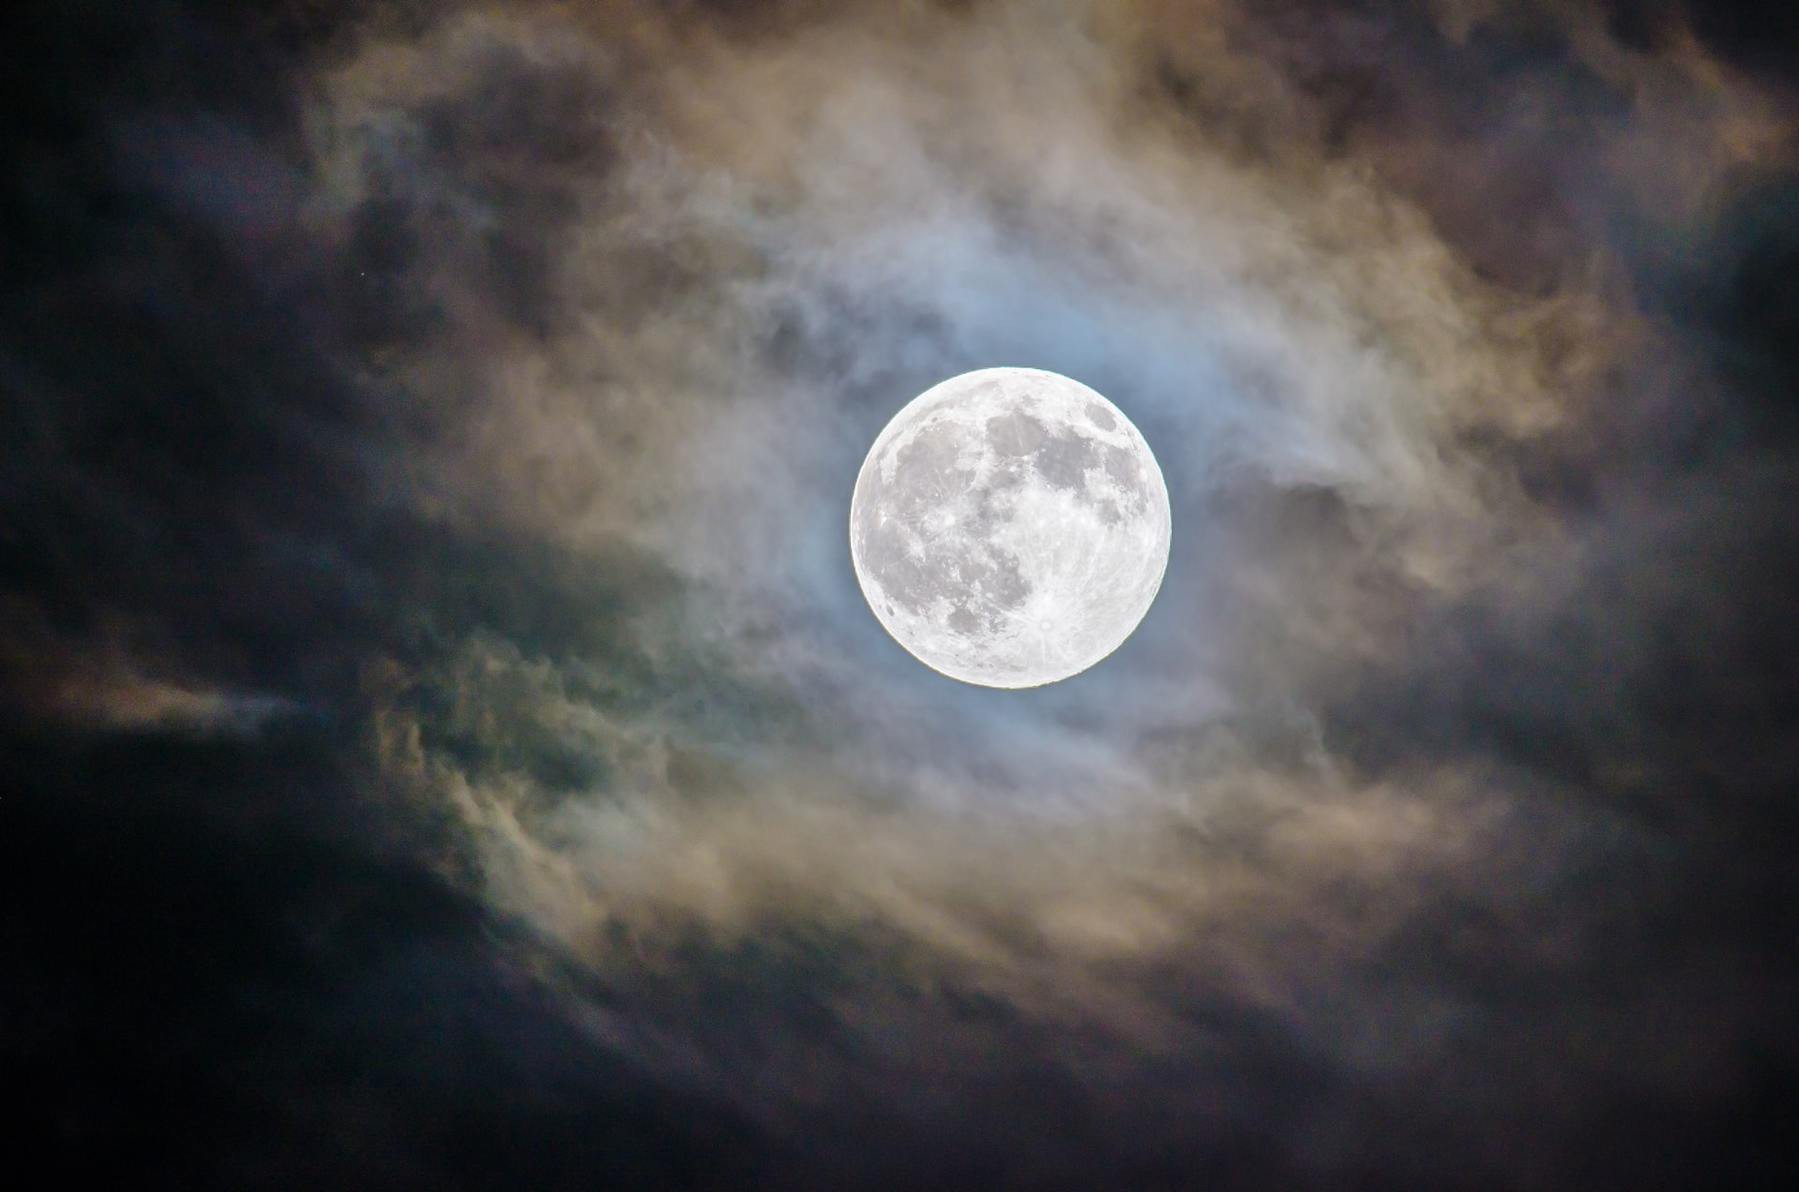 Moon against a night sky